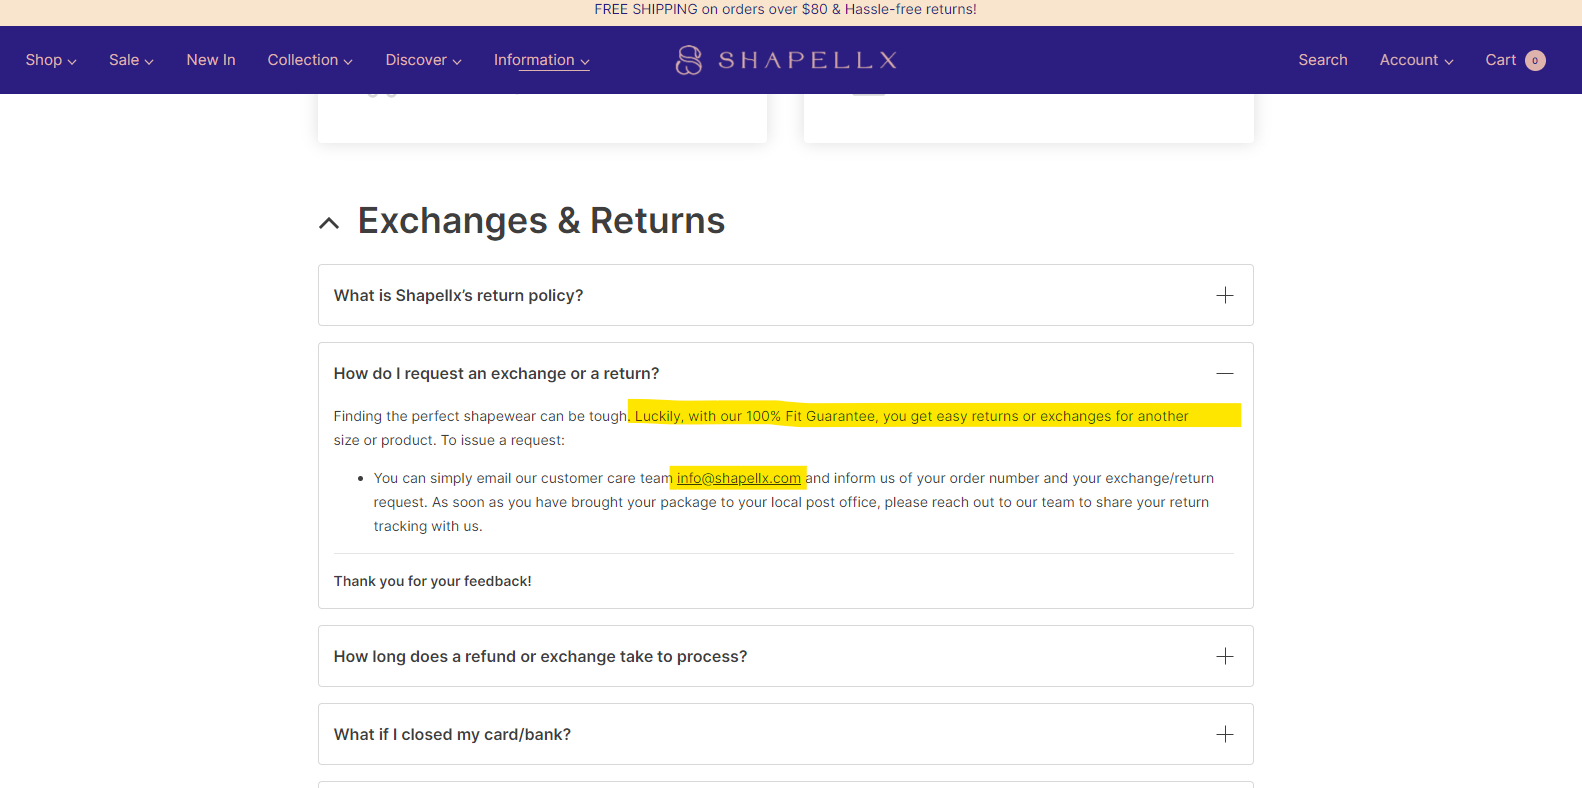 Shapellx Reviews - 1,623 Reviews of Shapellx.com